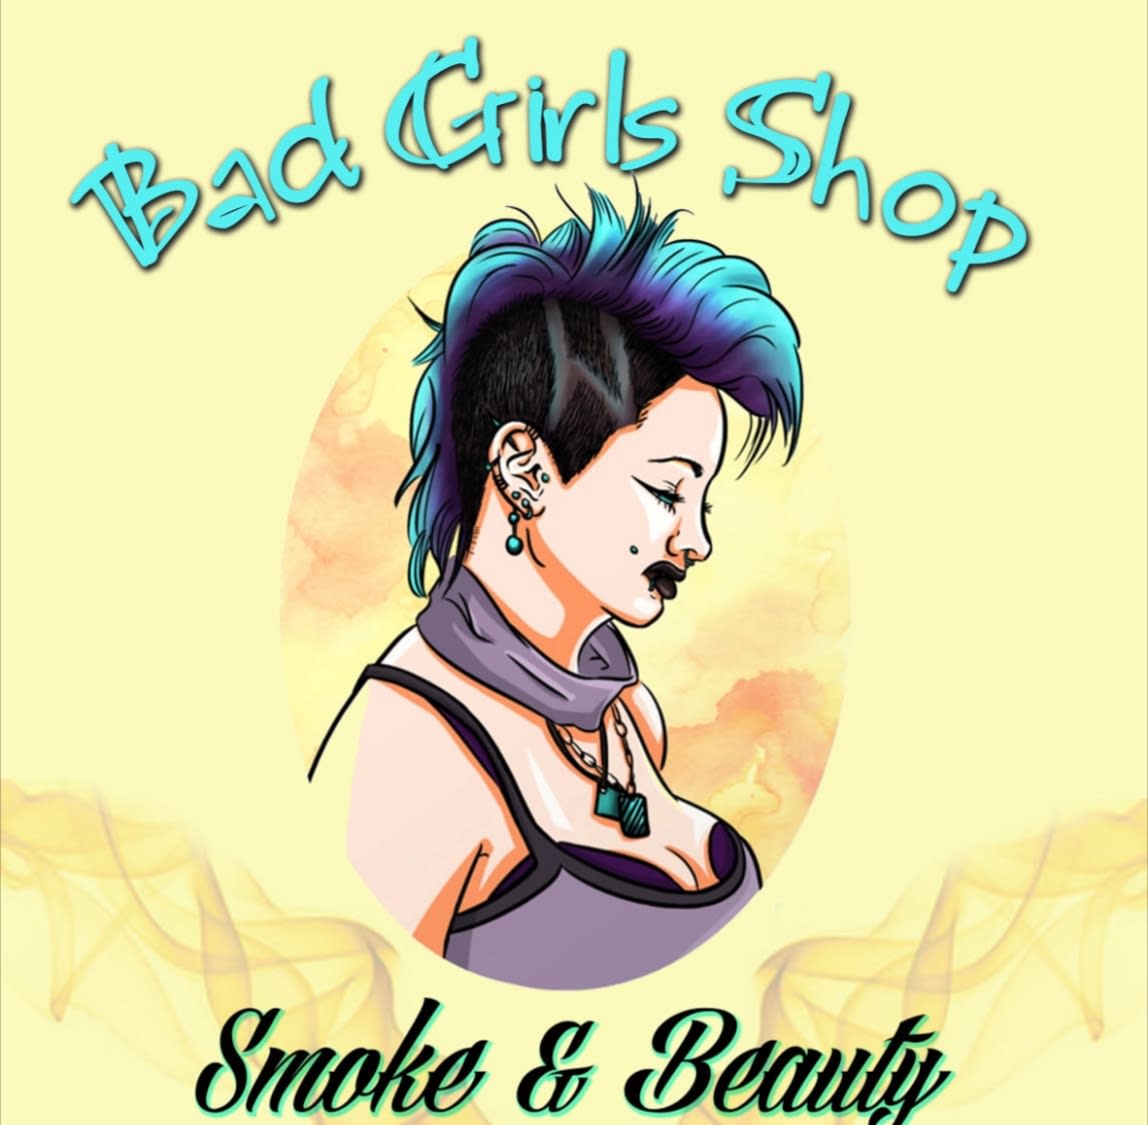 "Bad Girls Shop". Tienda De Chicas Malas.